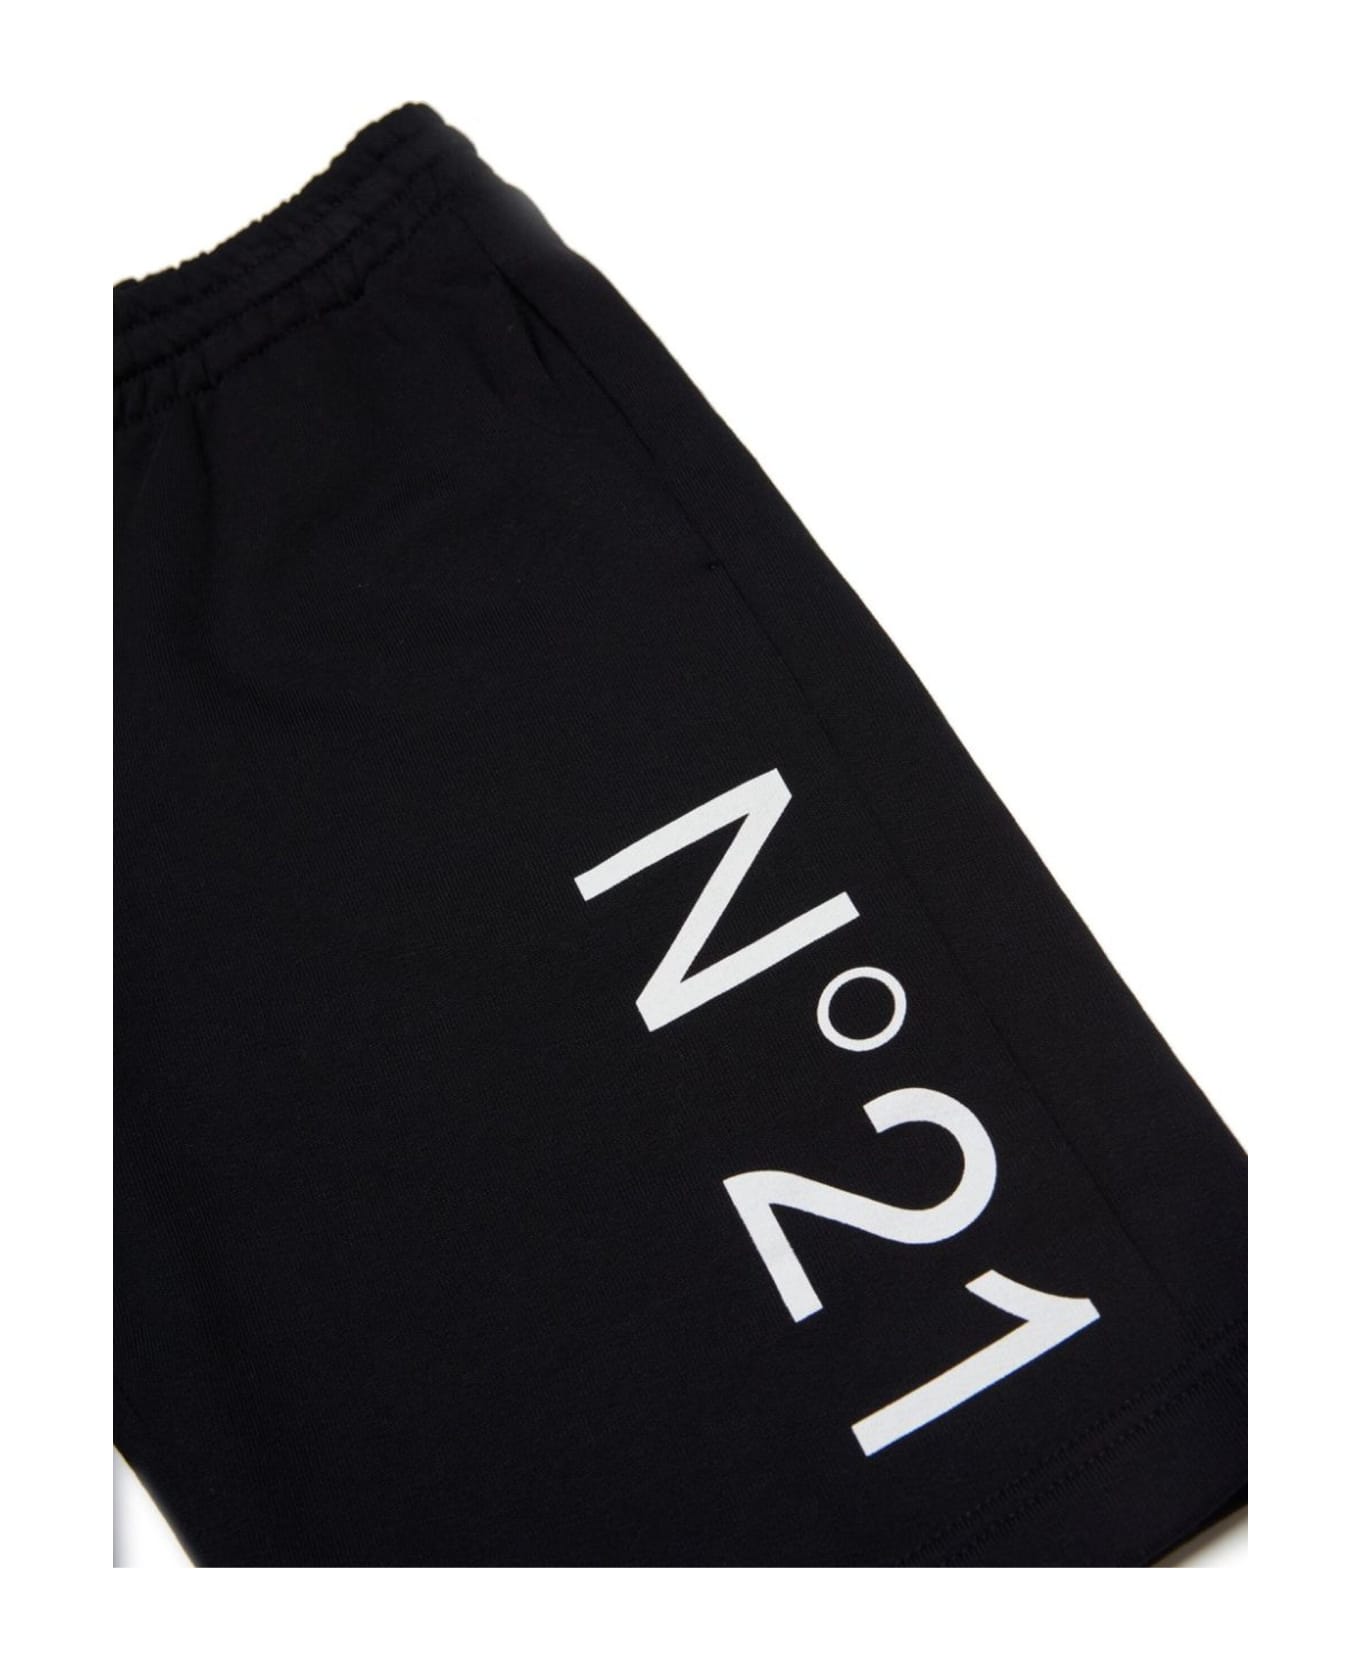 N.21 N°21 Shorts Black - Black ボトムス